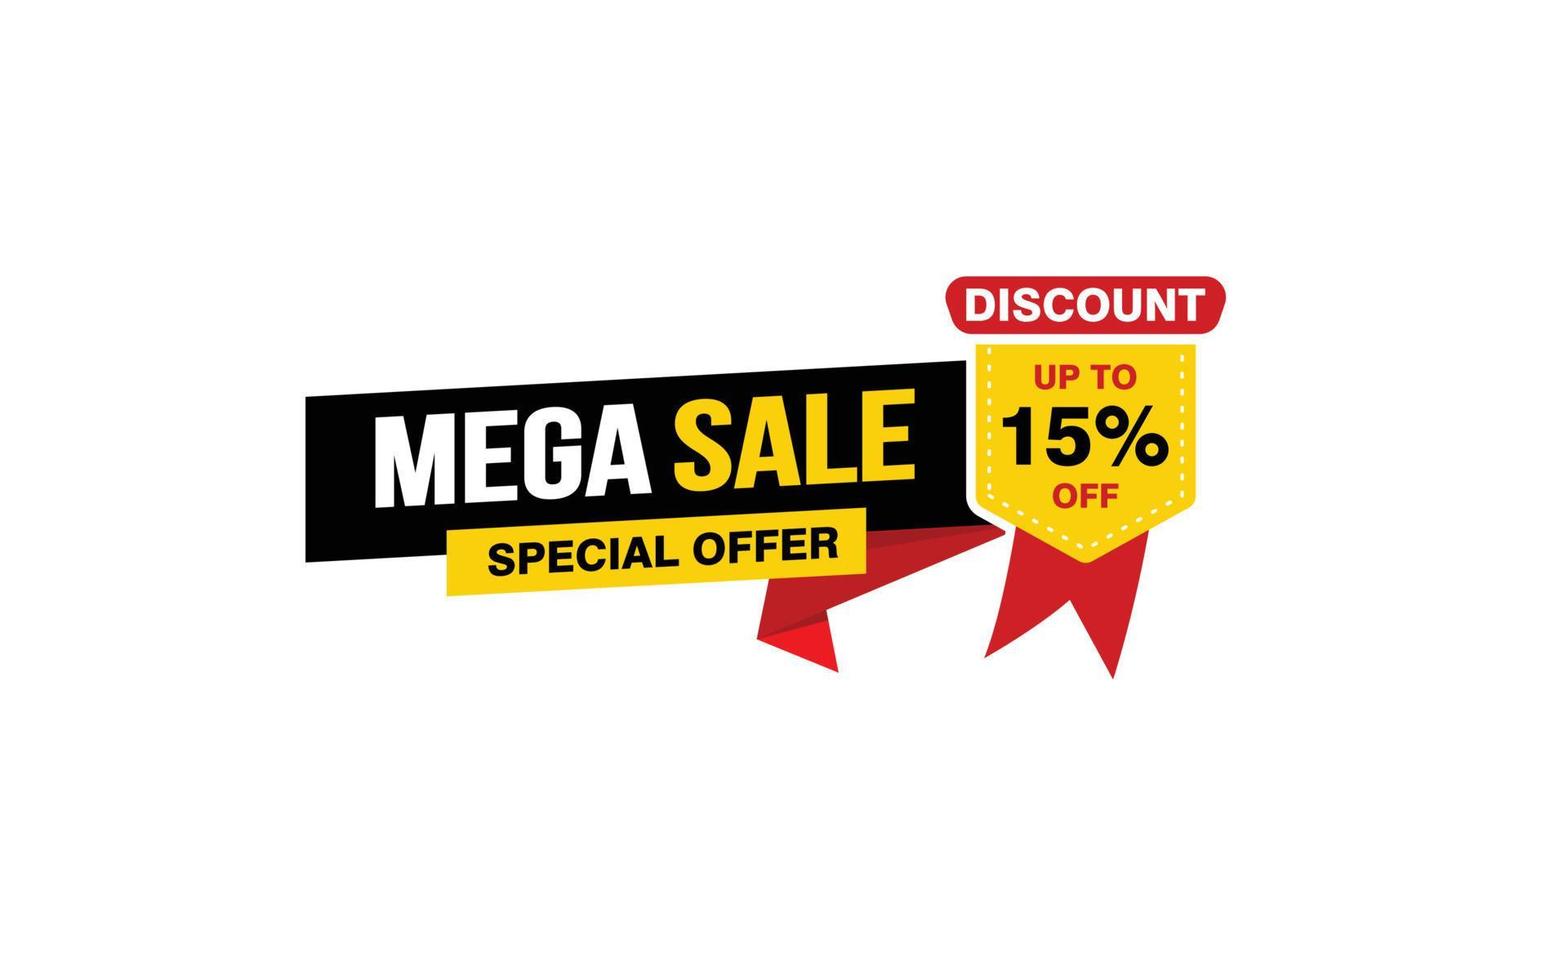 Oferta de mega venta del 15 por ciento, liquidación, diseño de banner de promoción con estilo de etiqueta. vector